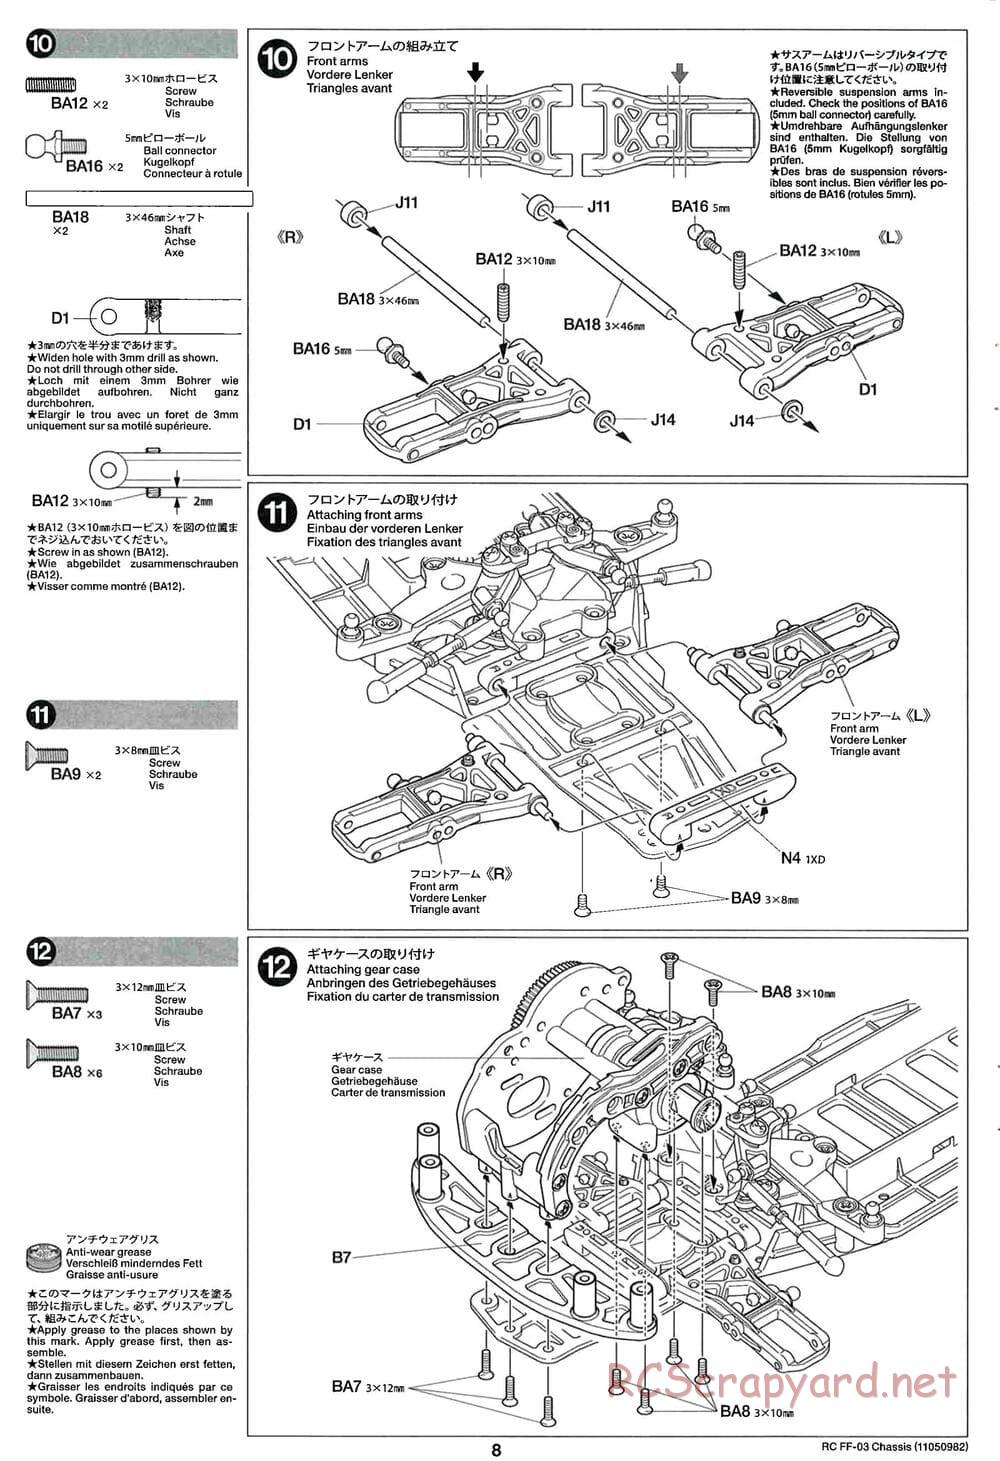 Tamiya - Castrol Honda Civic VTi - FF-03 Chassis - Manual - Page 8